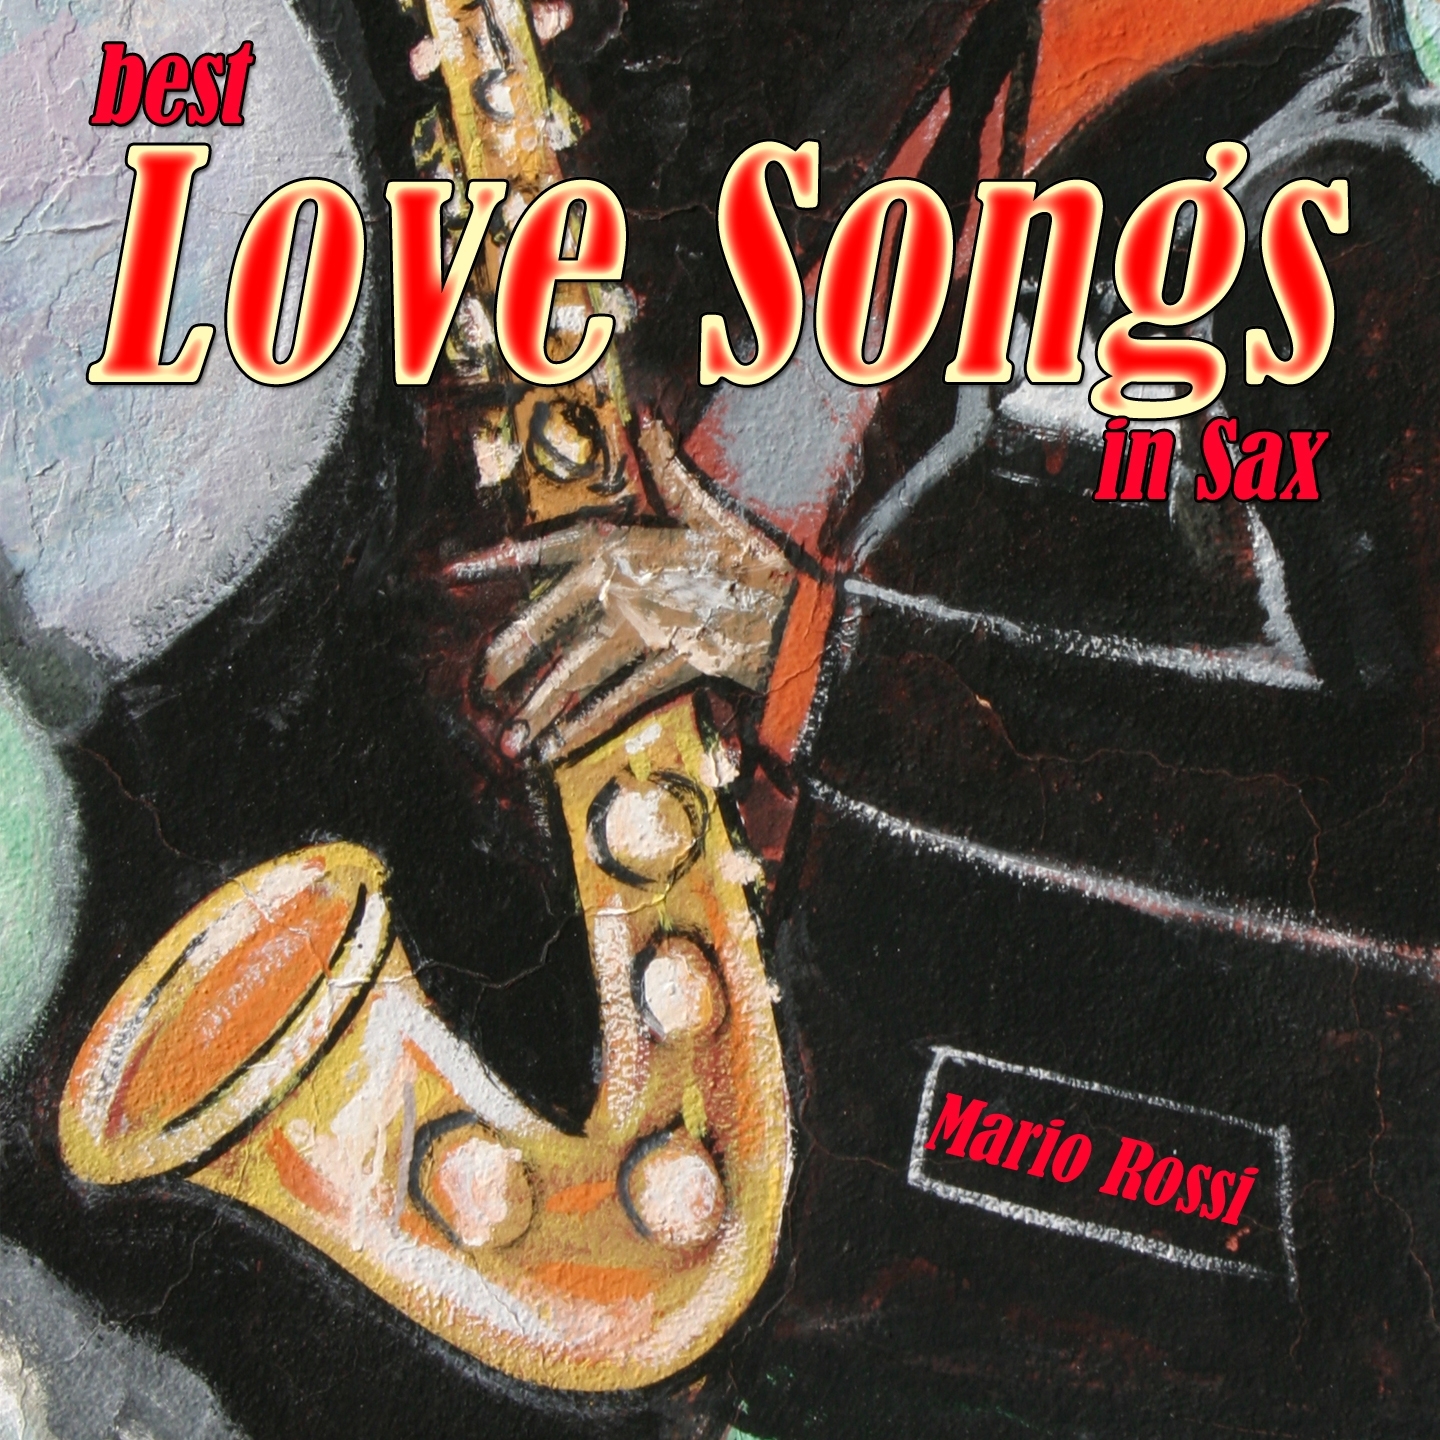 Best Love Songs in Sax